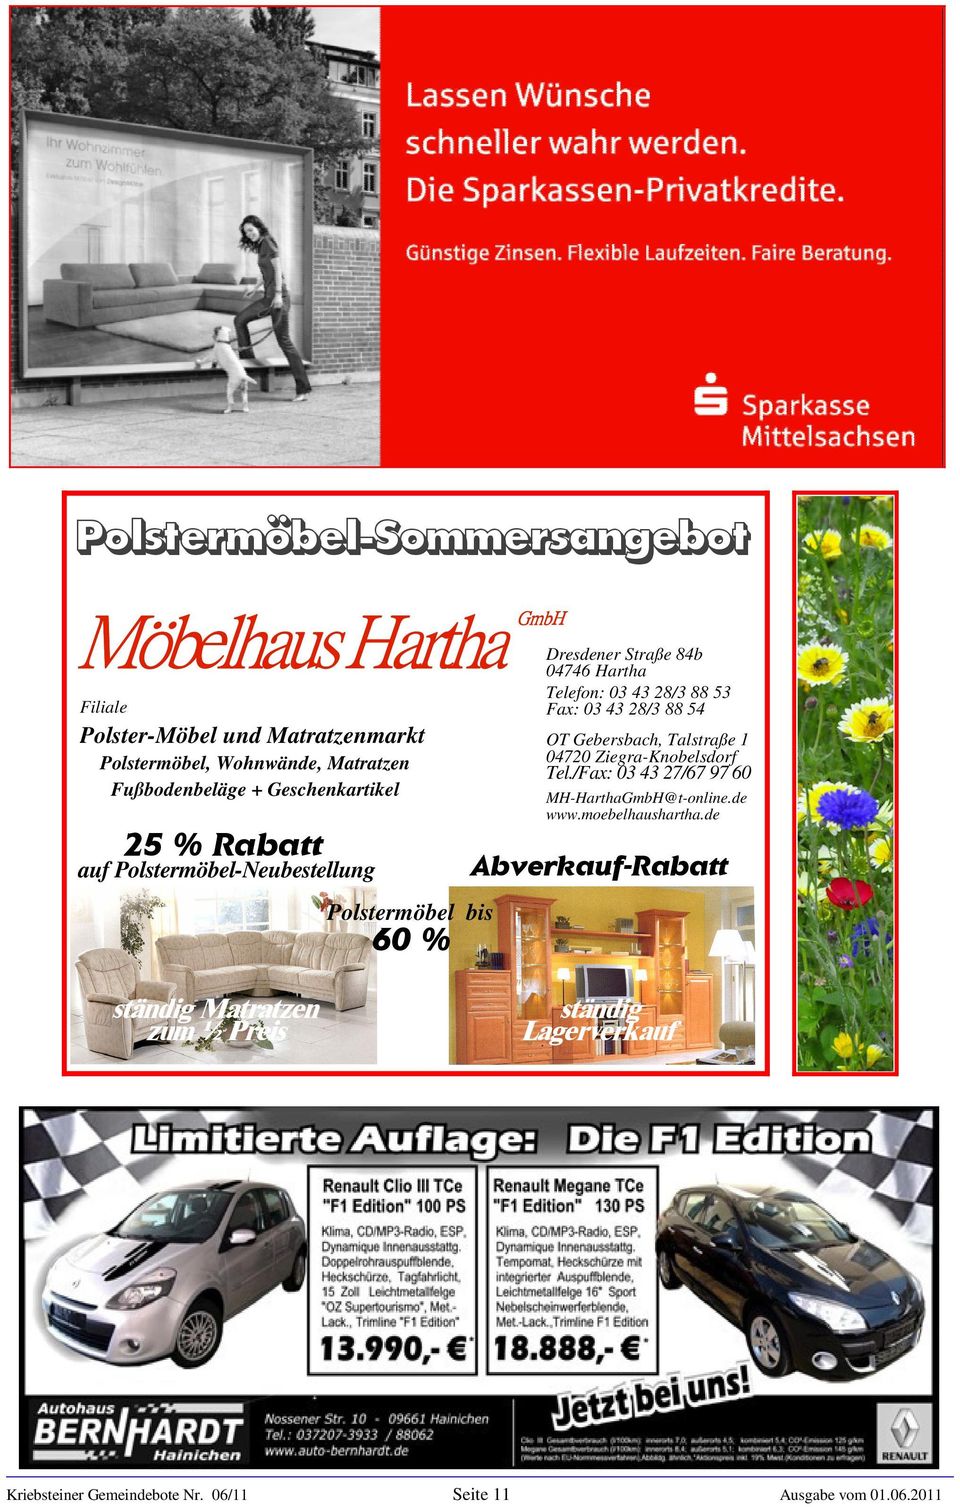 Geschenkartikel auf Polstermöbel-Neubestellung GmbH Tel./Fax: 03 43 27/67 97 60 MH-HarthaGmbH@t-online.de www.moebelhaushartha.